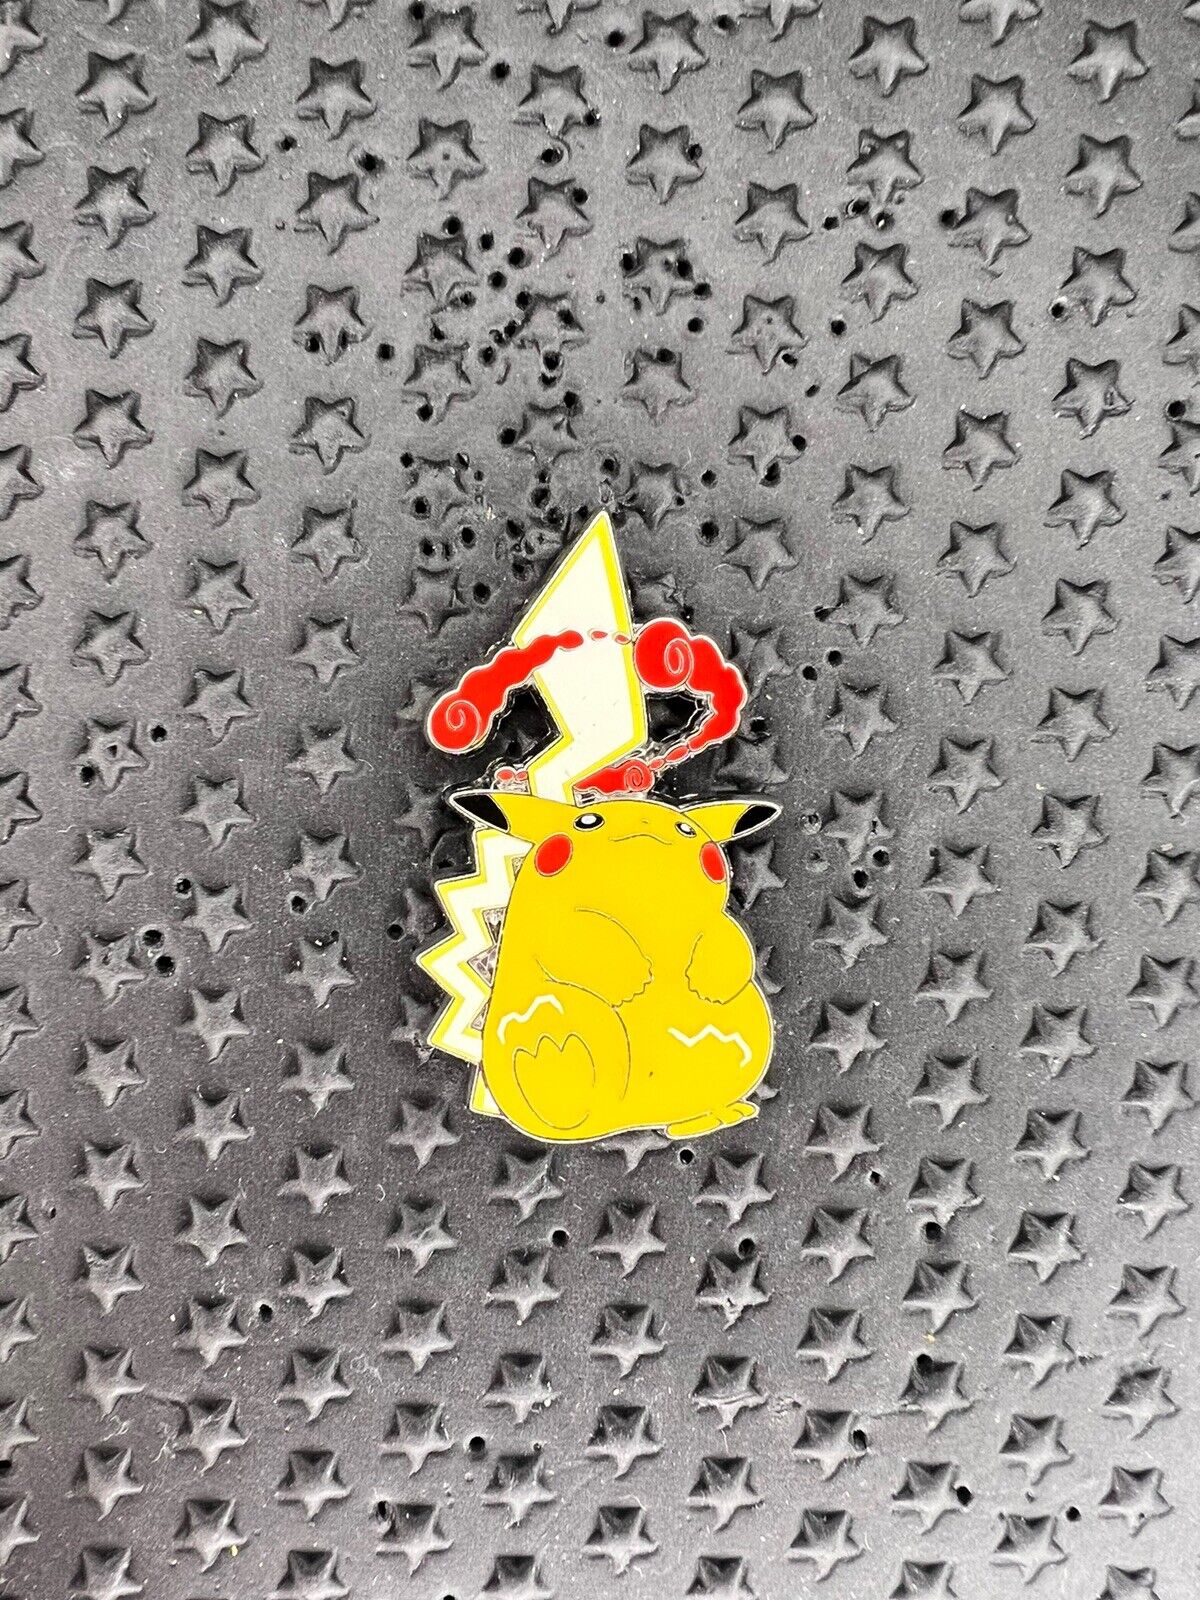 2023 Pikachu Vmax Pin Official Pokémon Crown Zenith